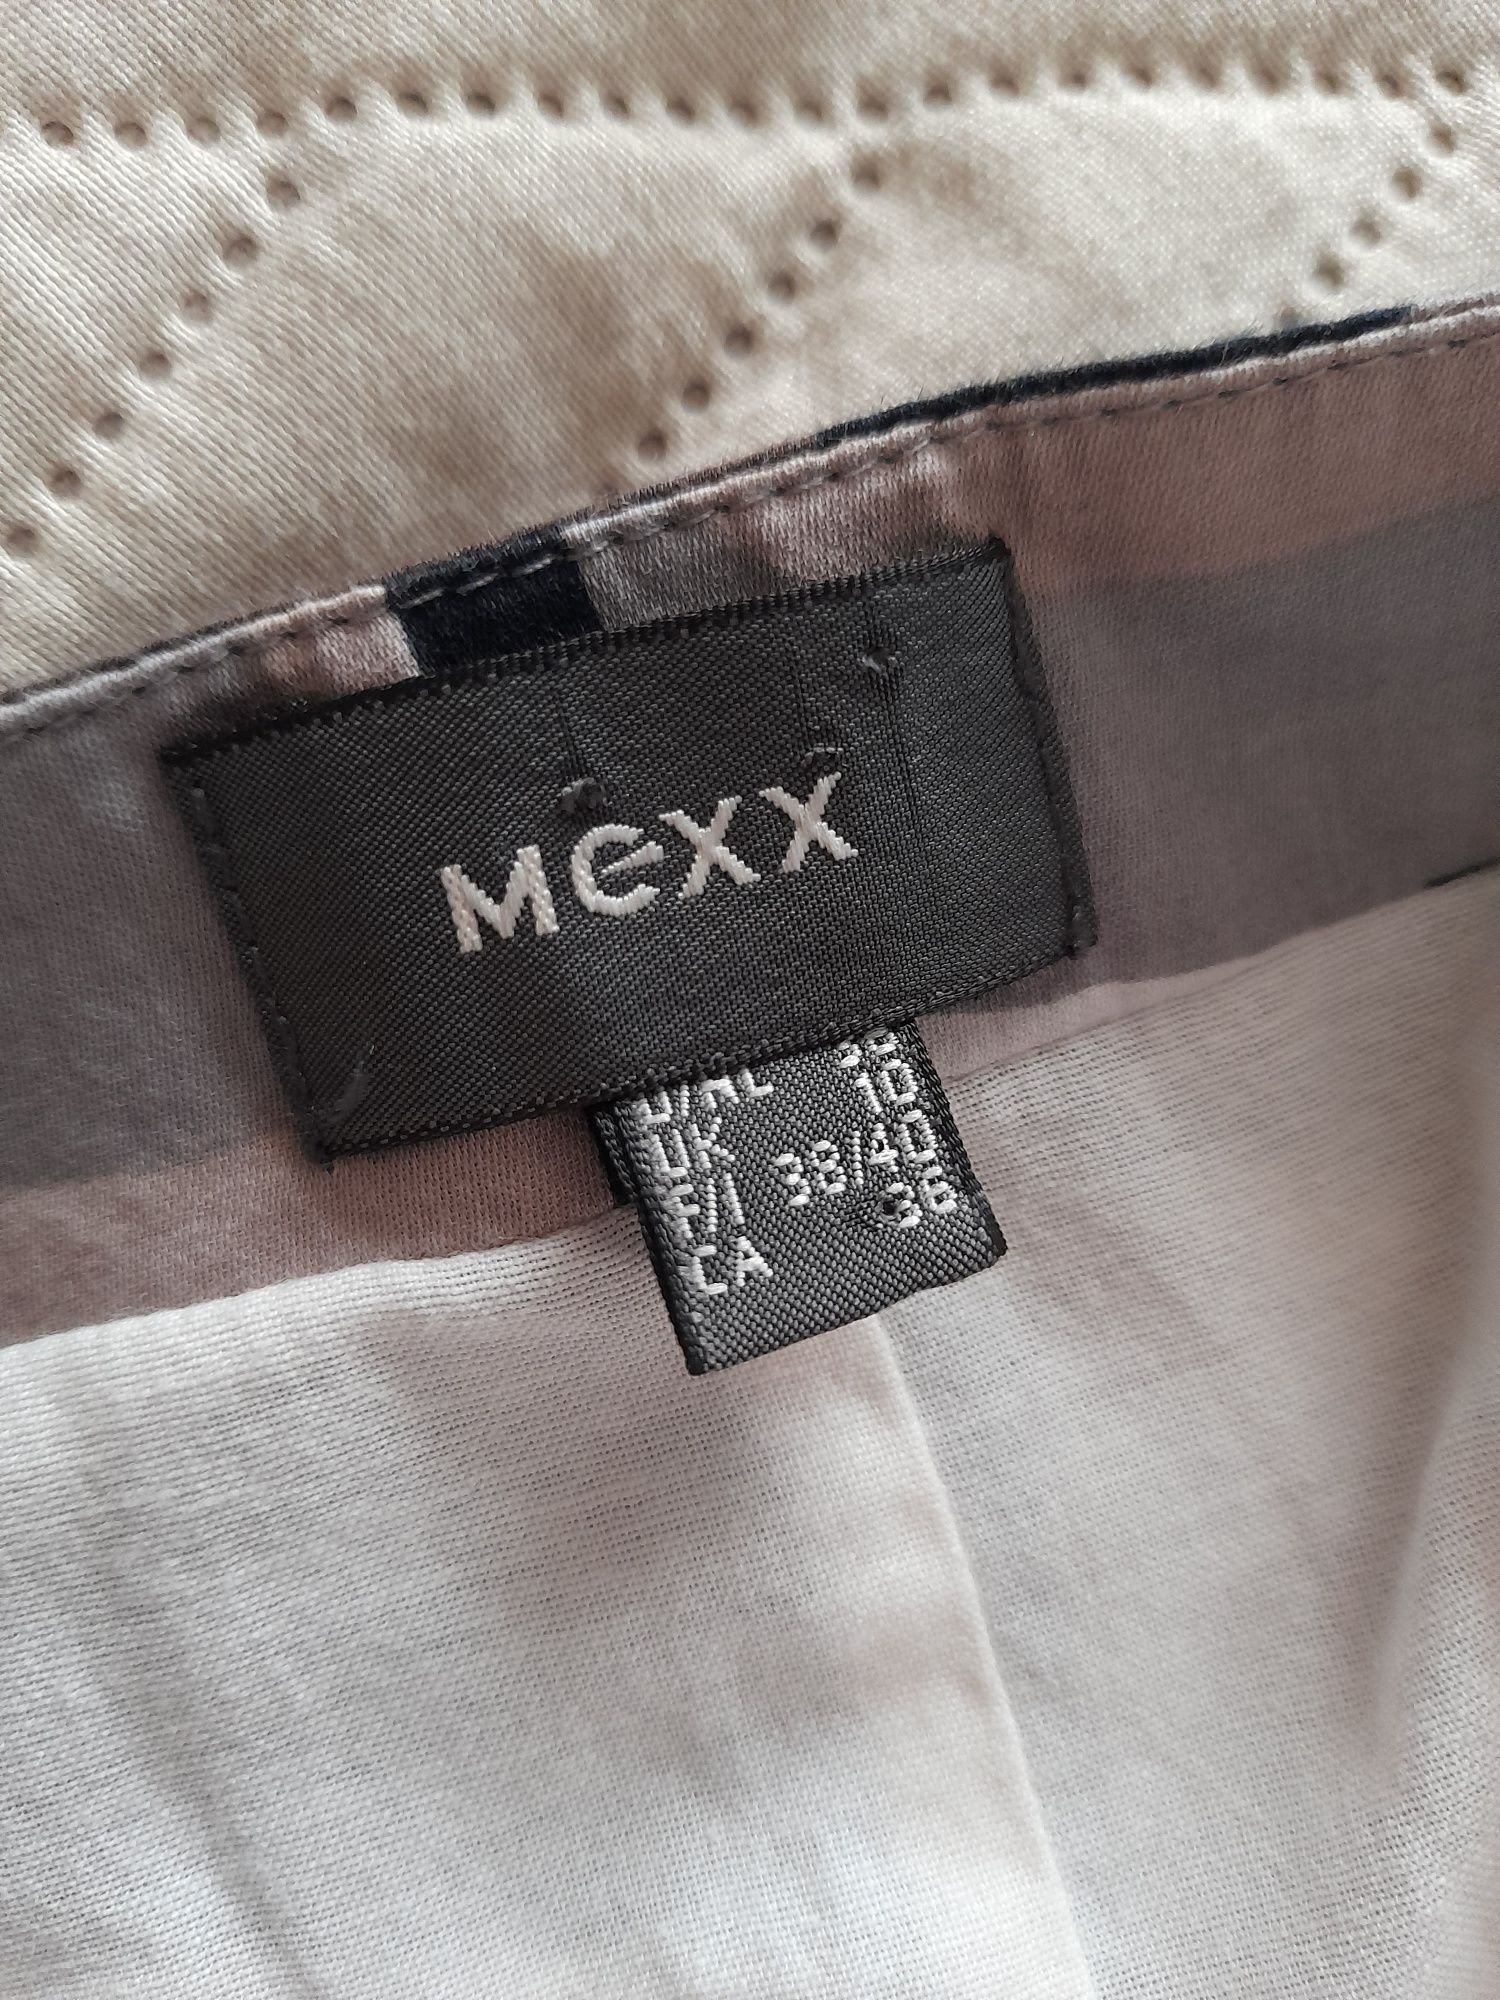 Spódnica Mexx, 100%bawełna, rozm. 38